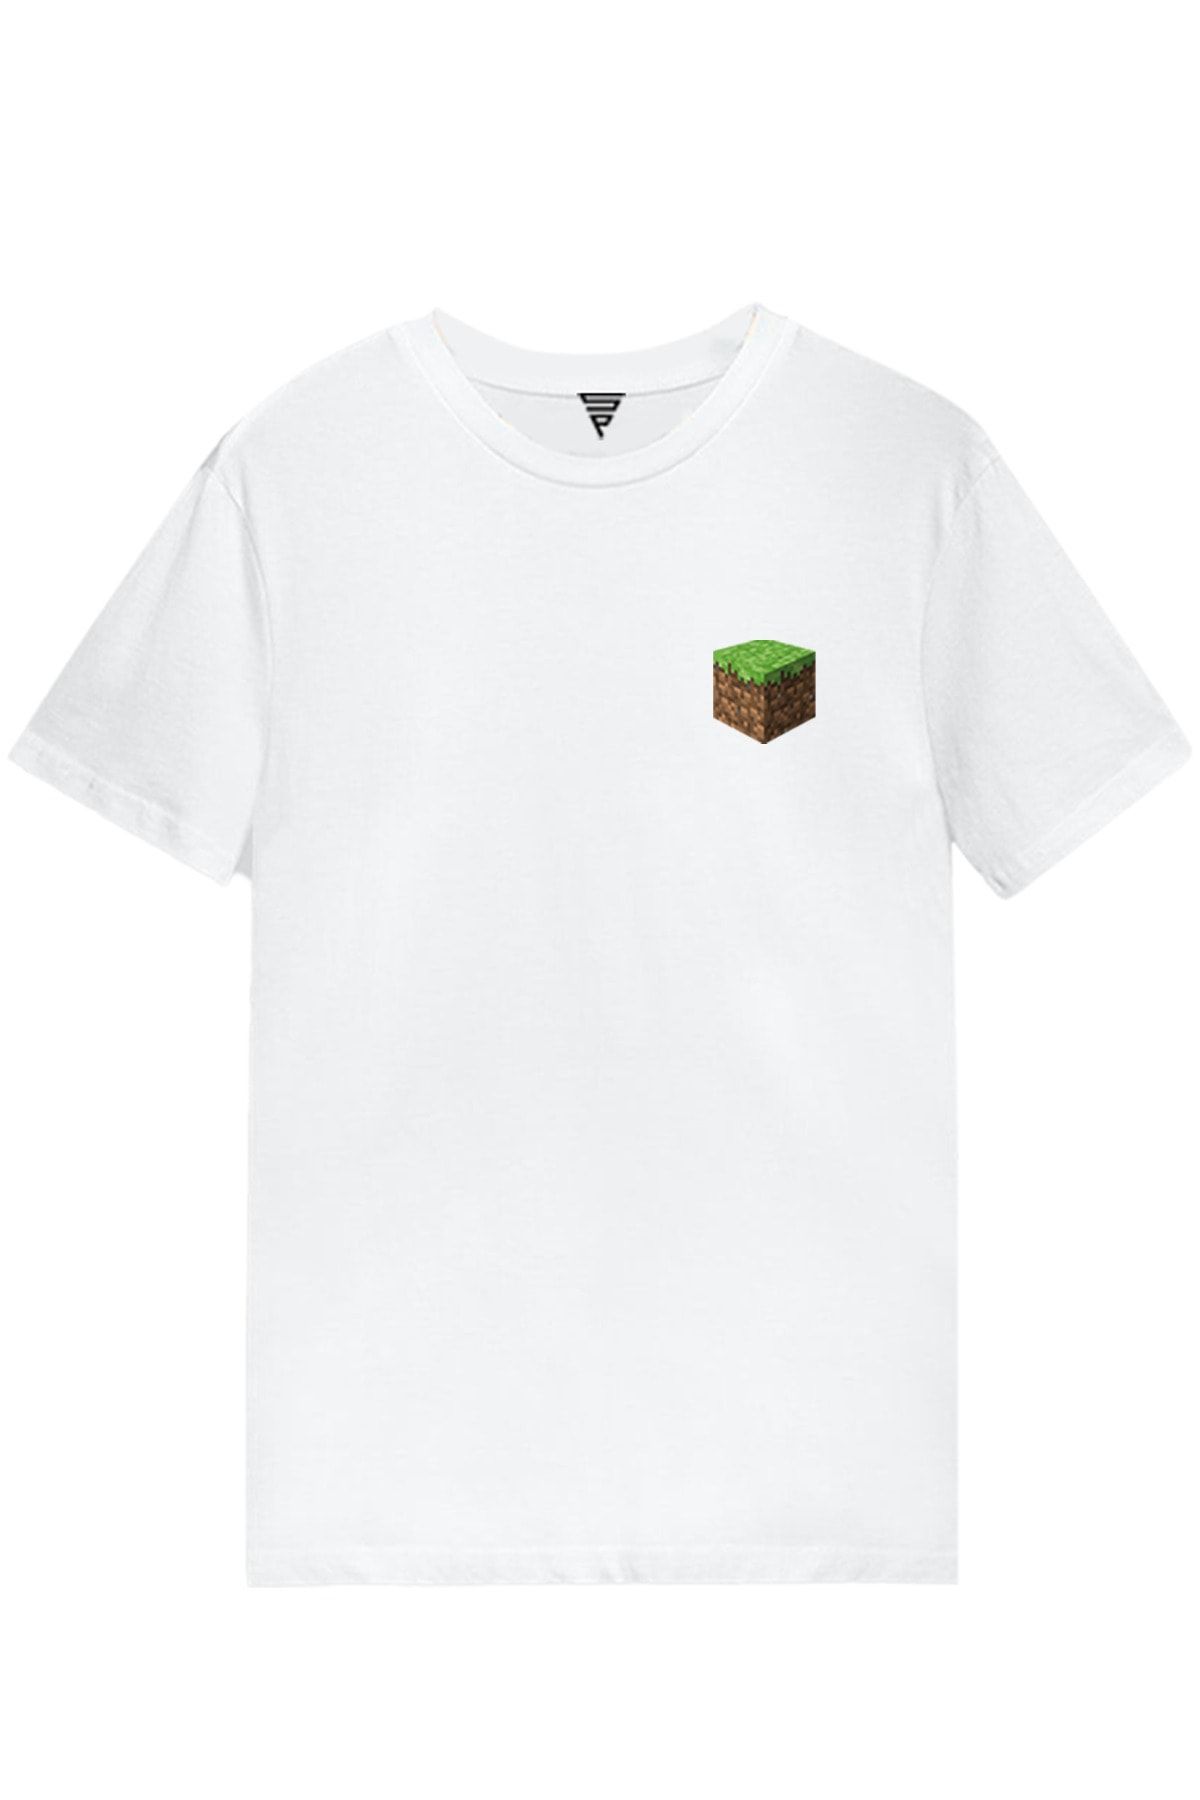 Minecraft Toprak Blok Baskılı Kısa Kollu Beyaz Gamer Tişört